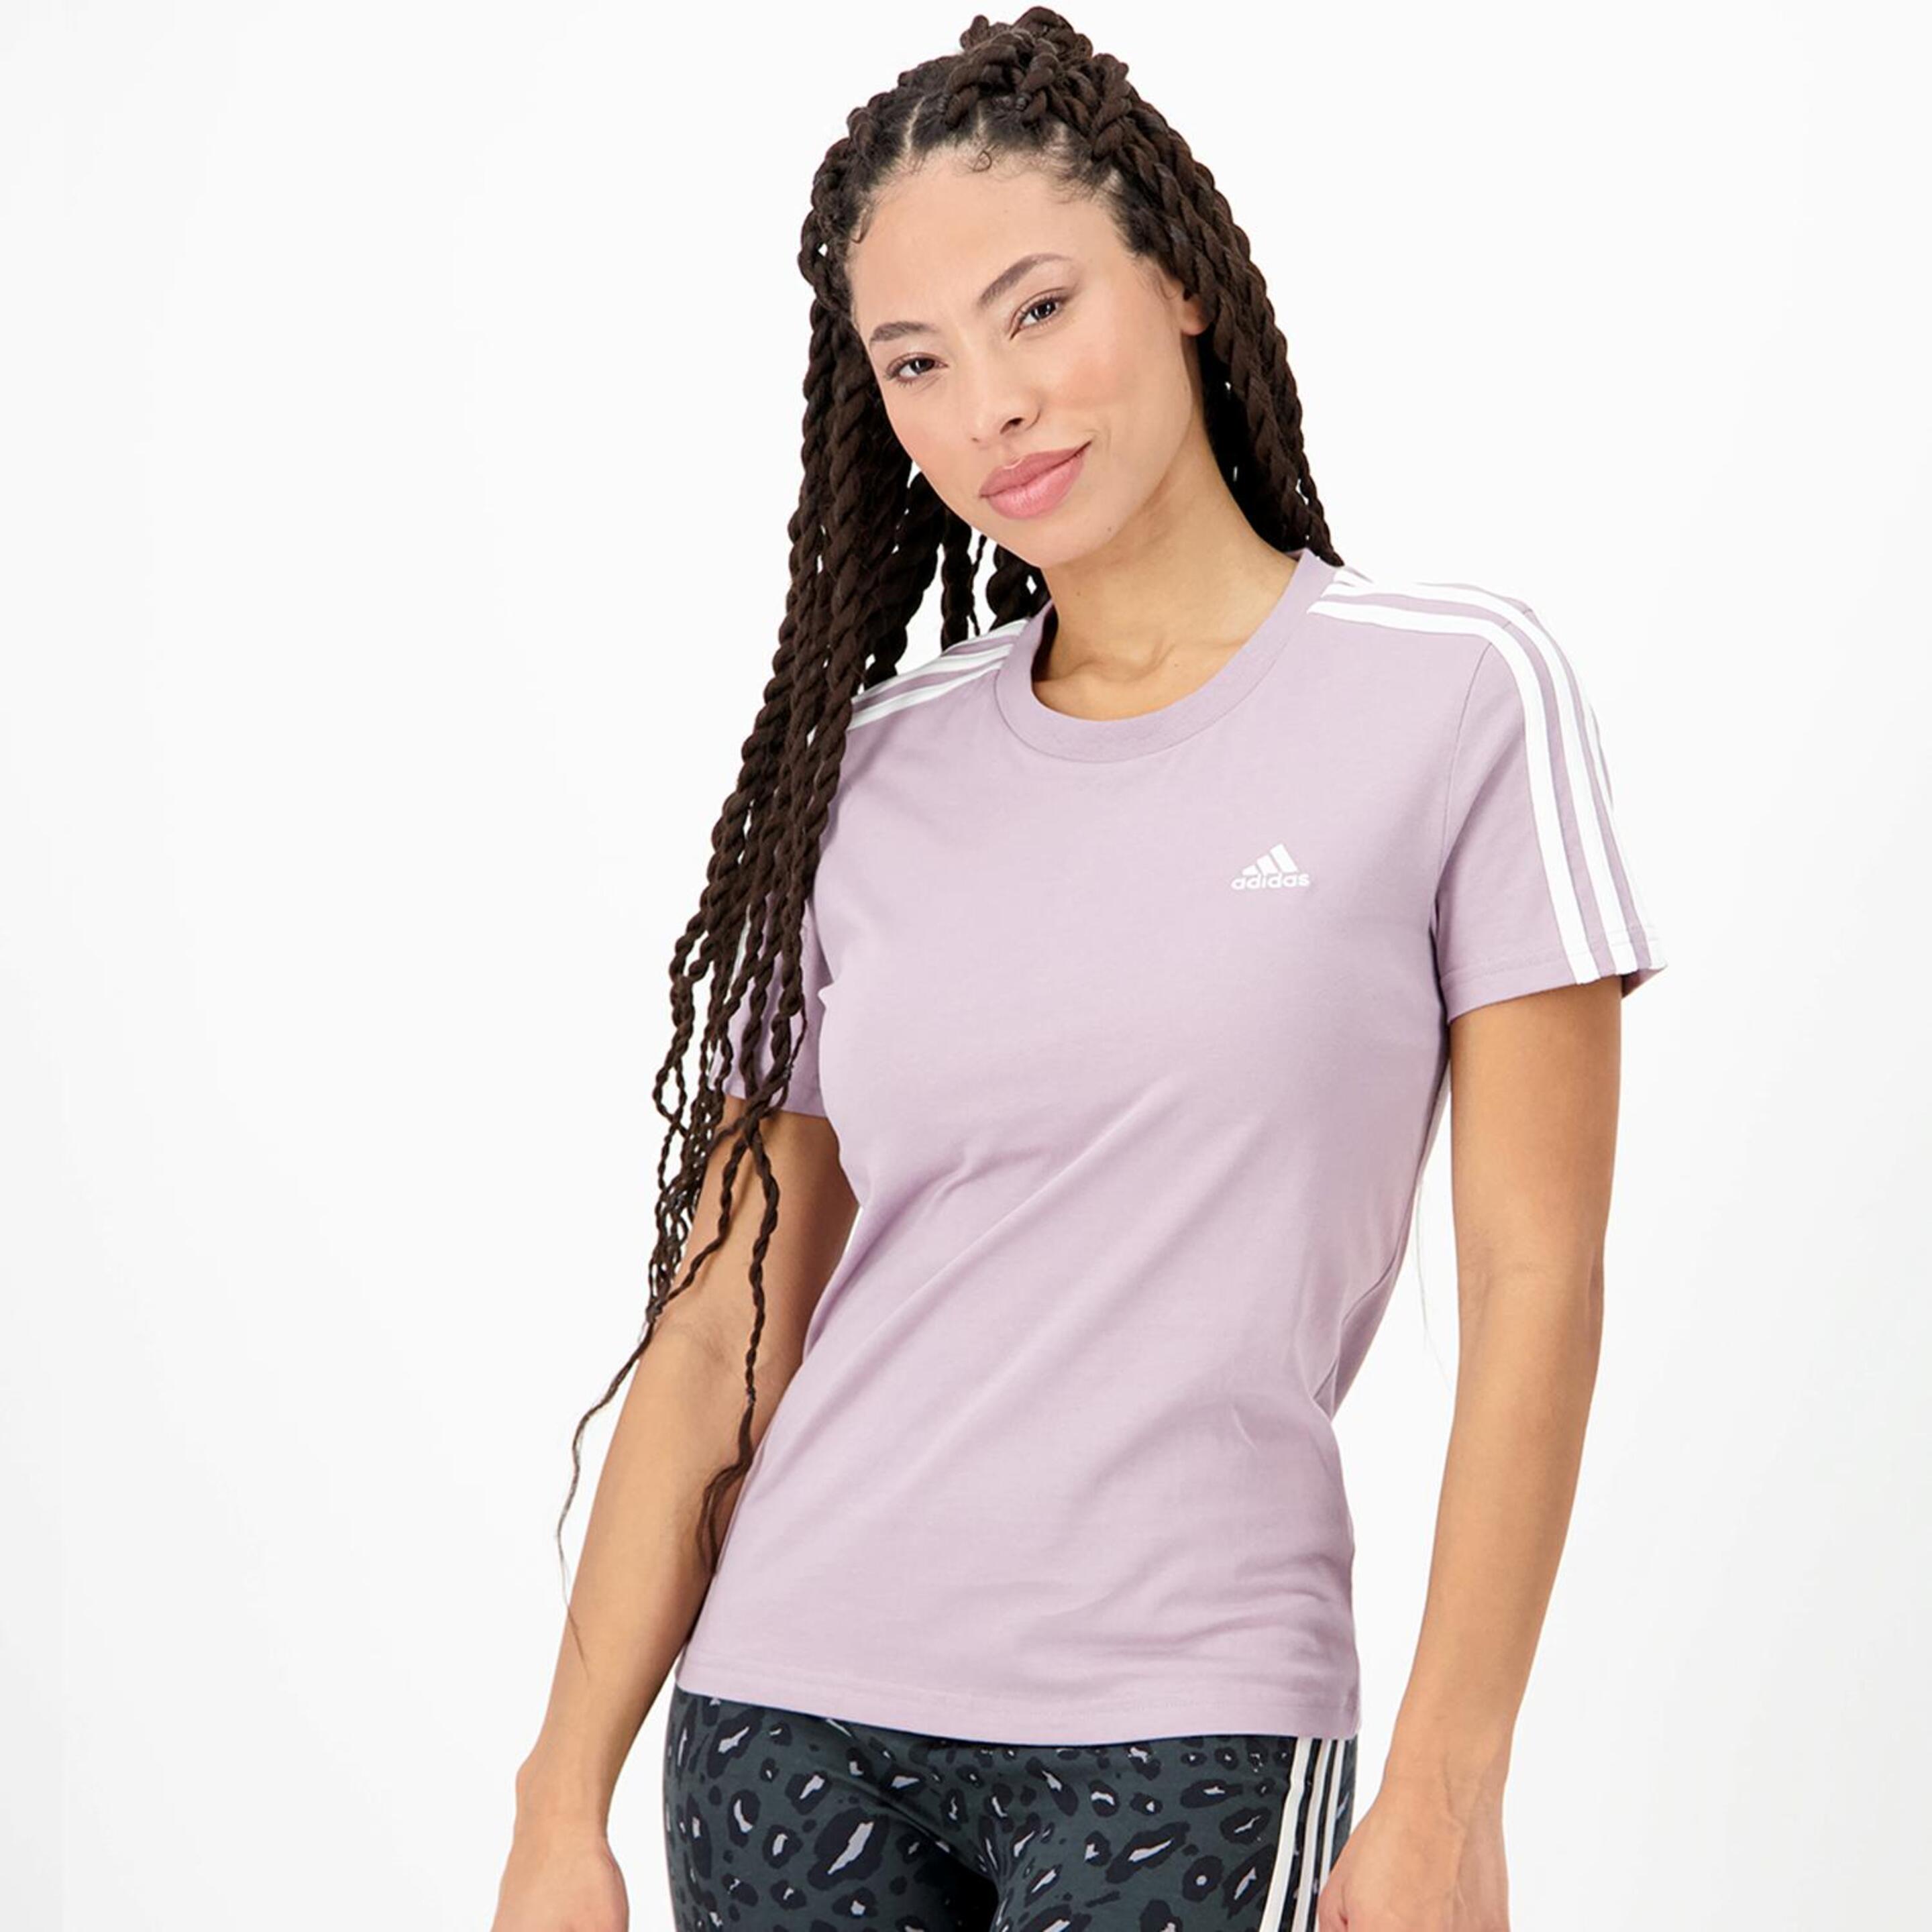 adidas 3 Stripes - morado - Camiseta Mujer